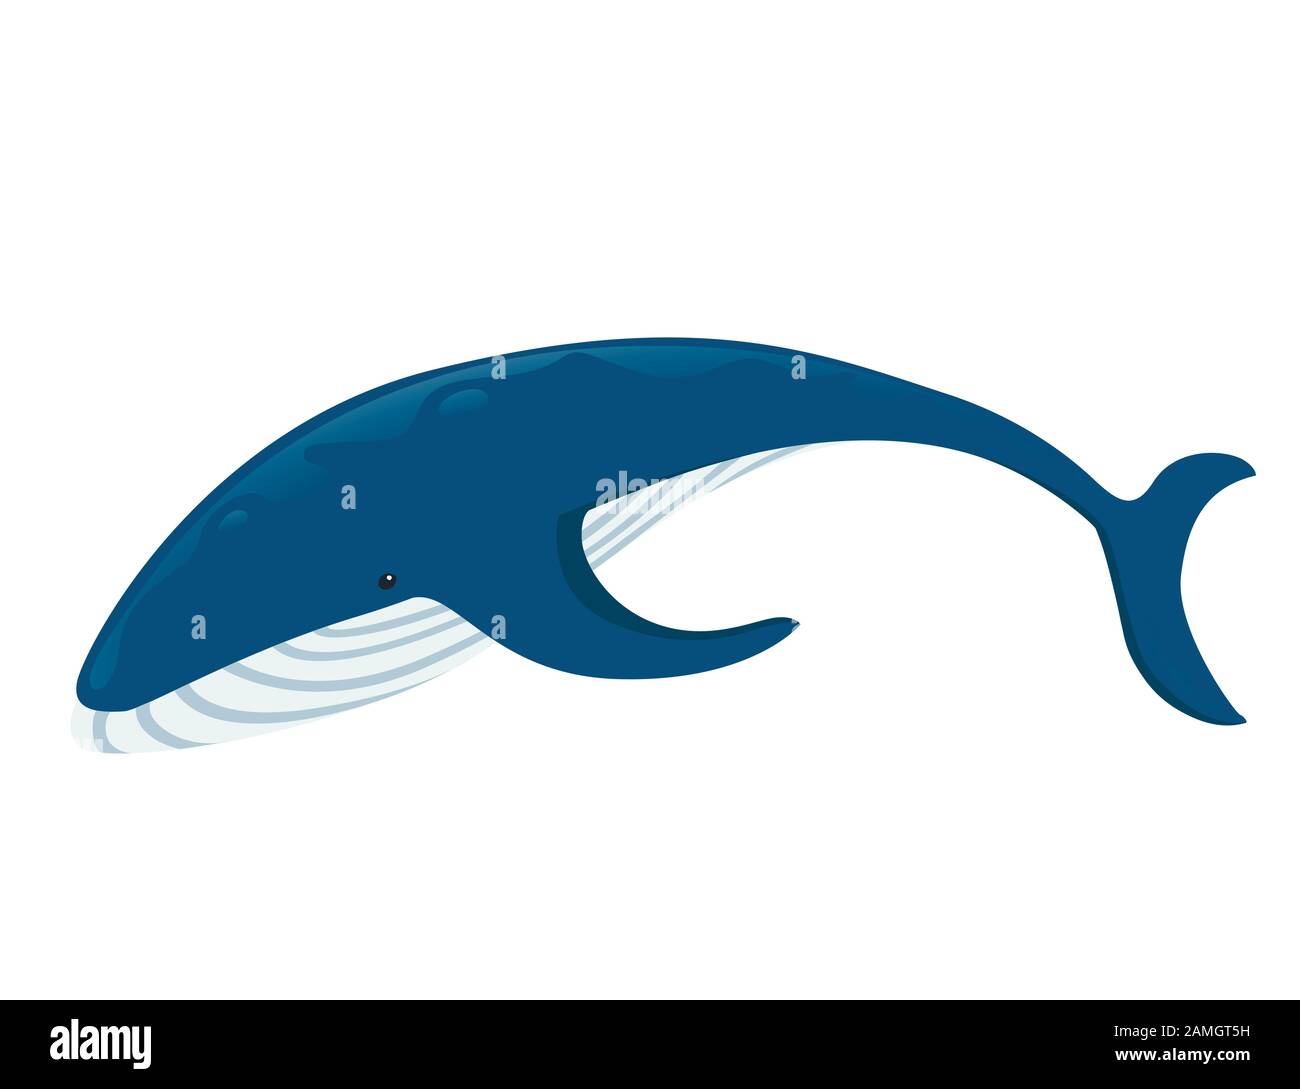 Big Blue Whale Cartoon Tierdesign größte Säugetiere der Erde flache Vektorgrafiken isoliert auf weißem Hintergrund. Stock Vektor